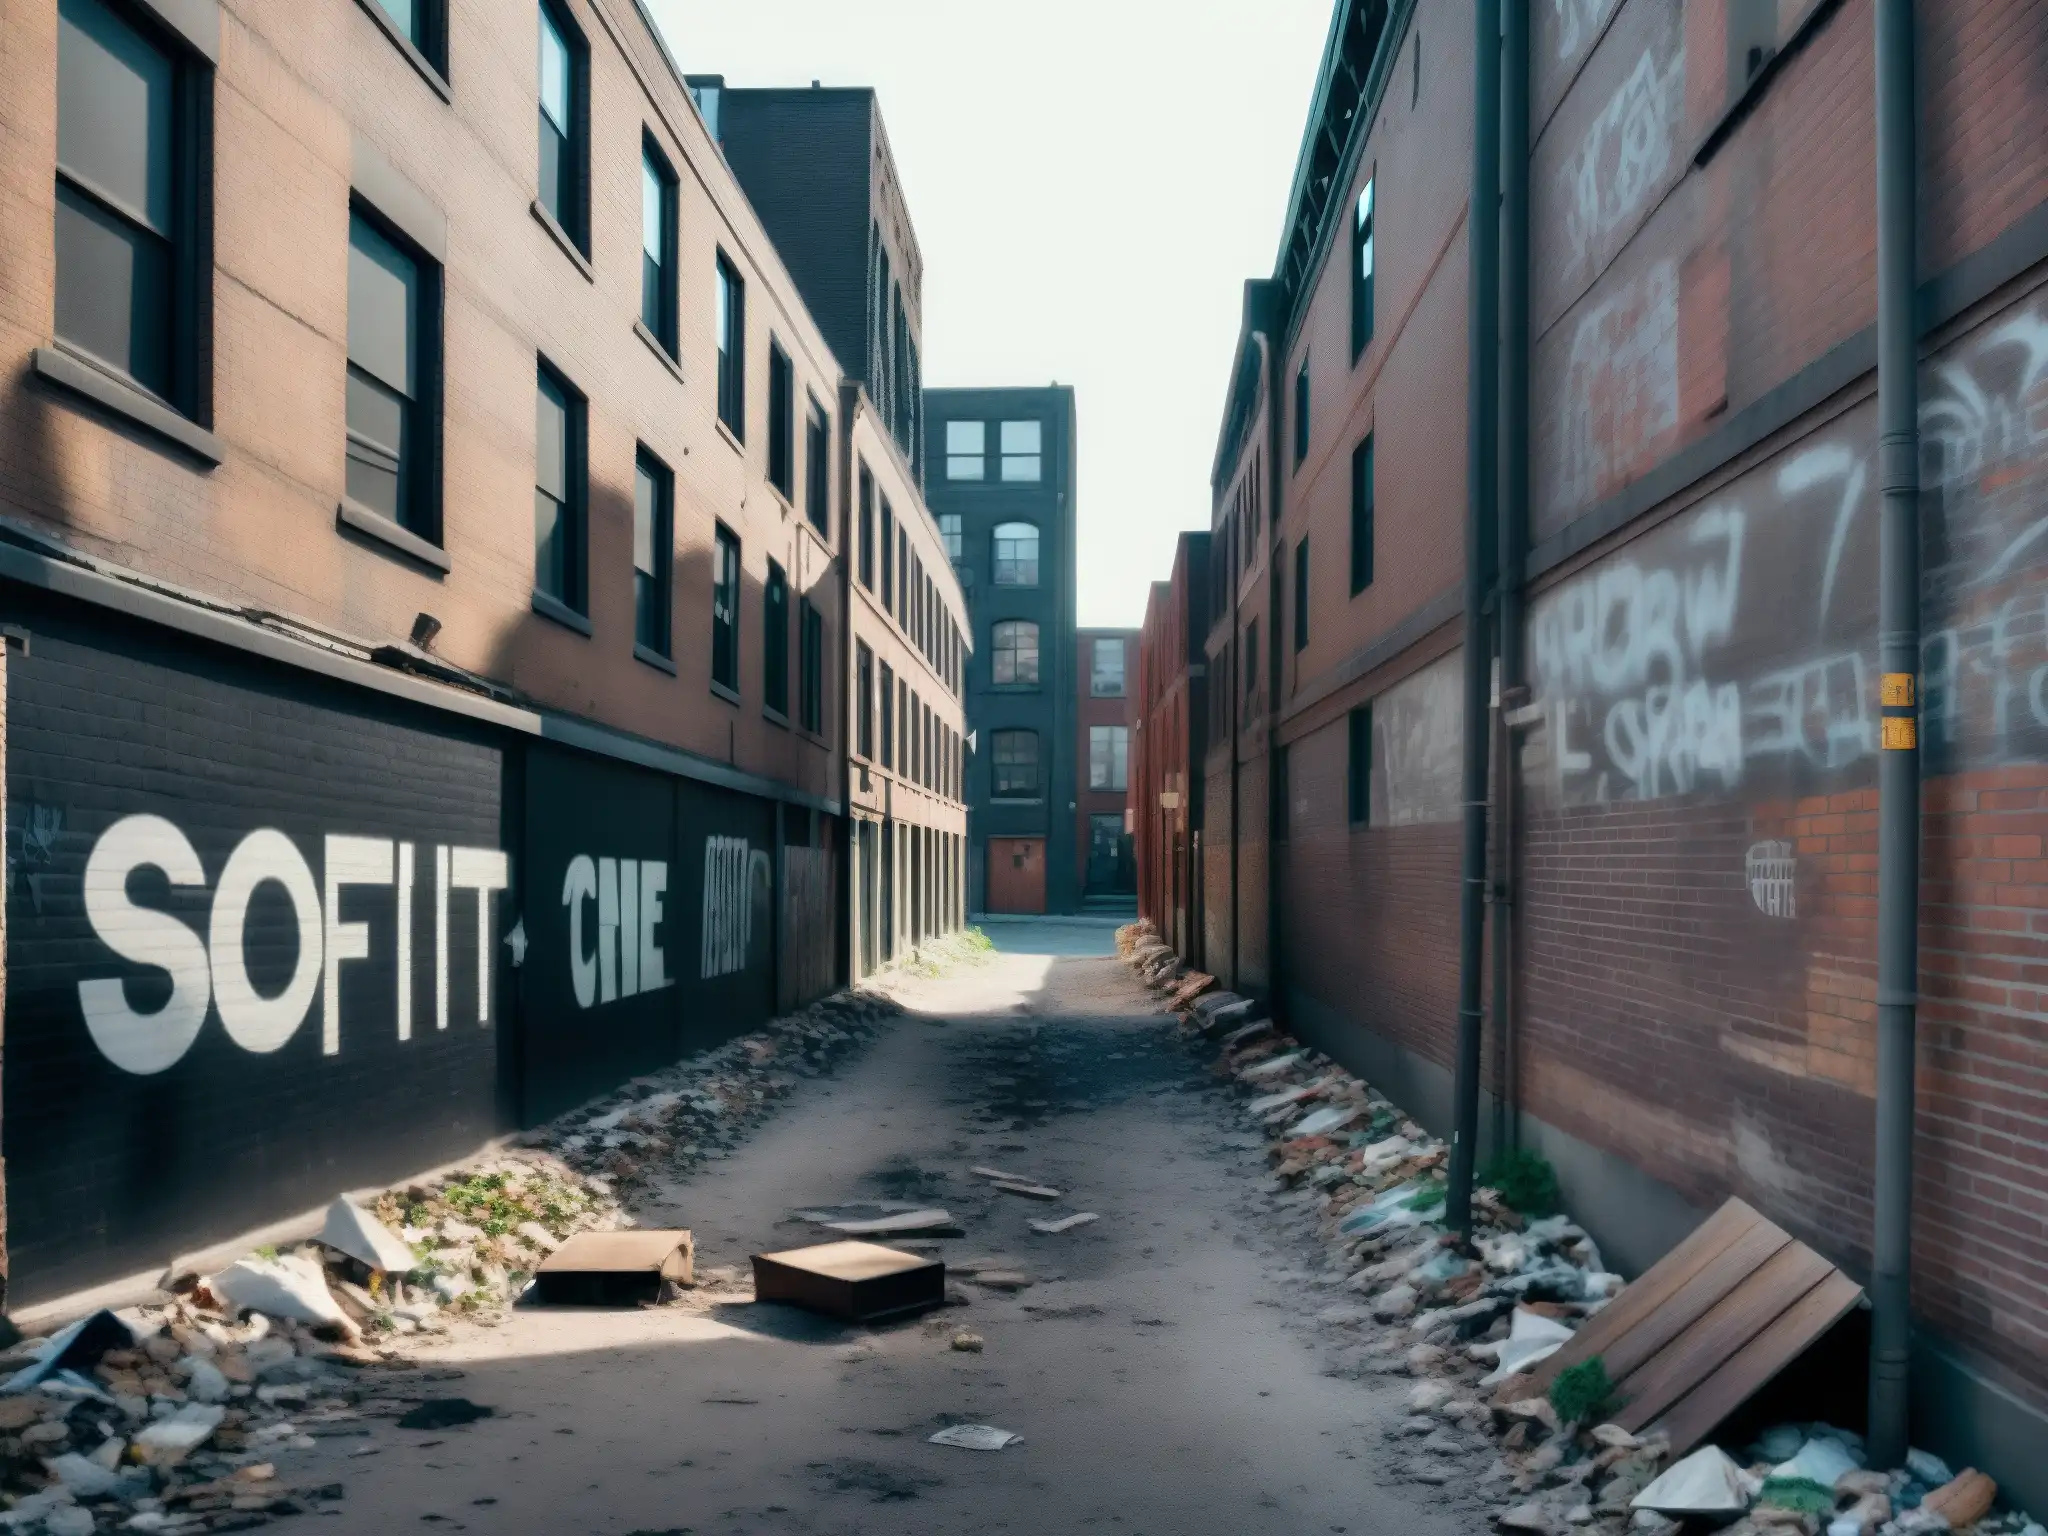 Un desolado callejón de Toronto con edificios altos y grafitis